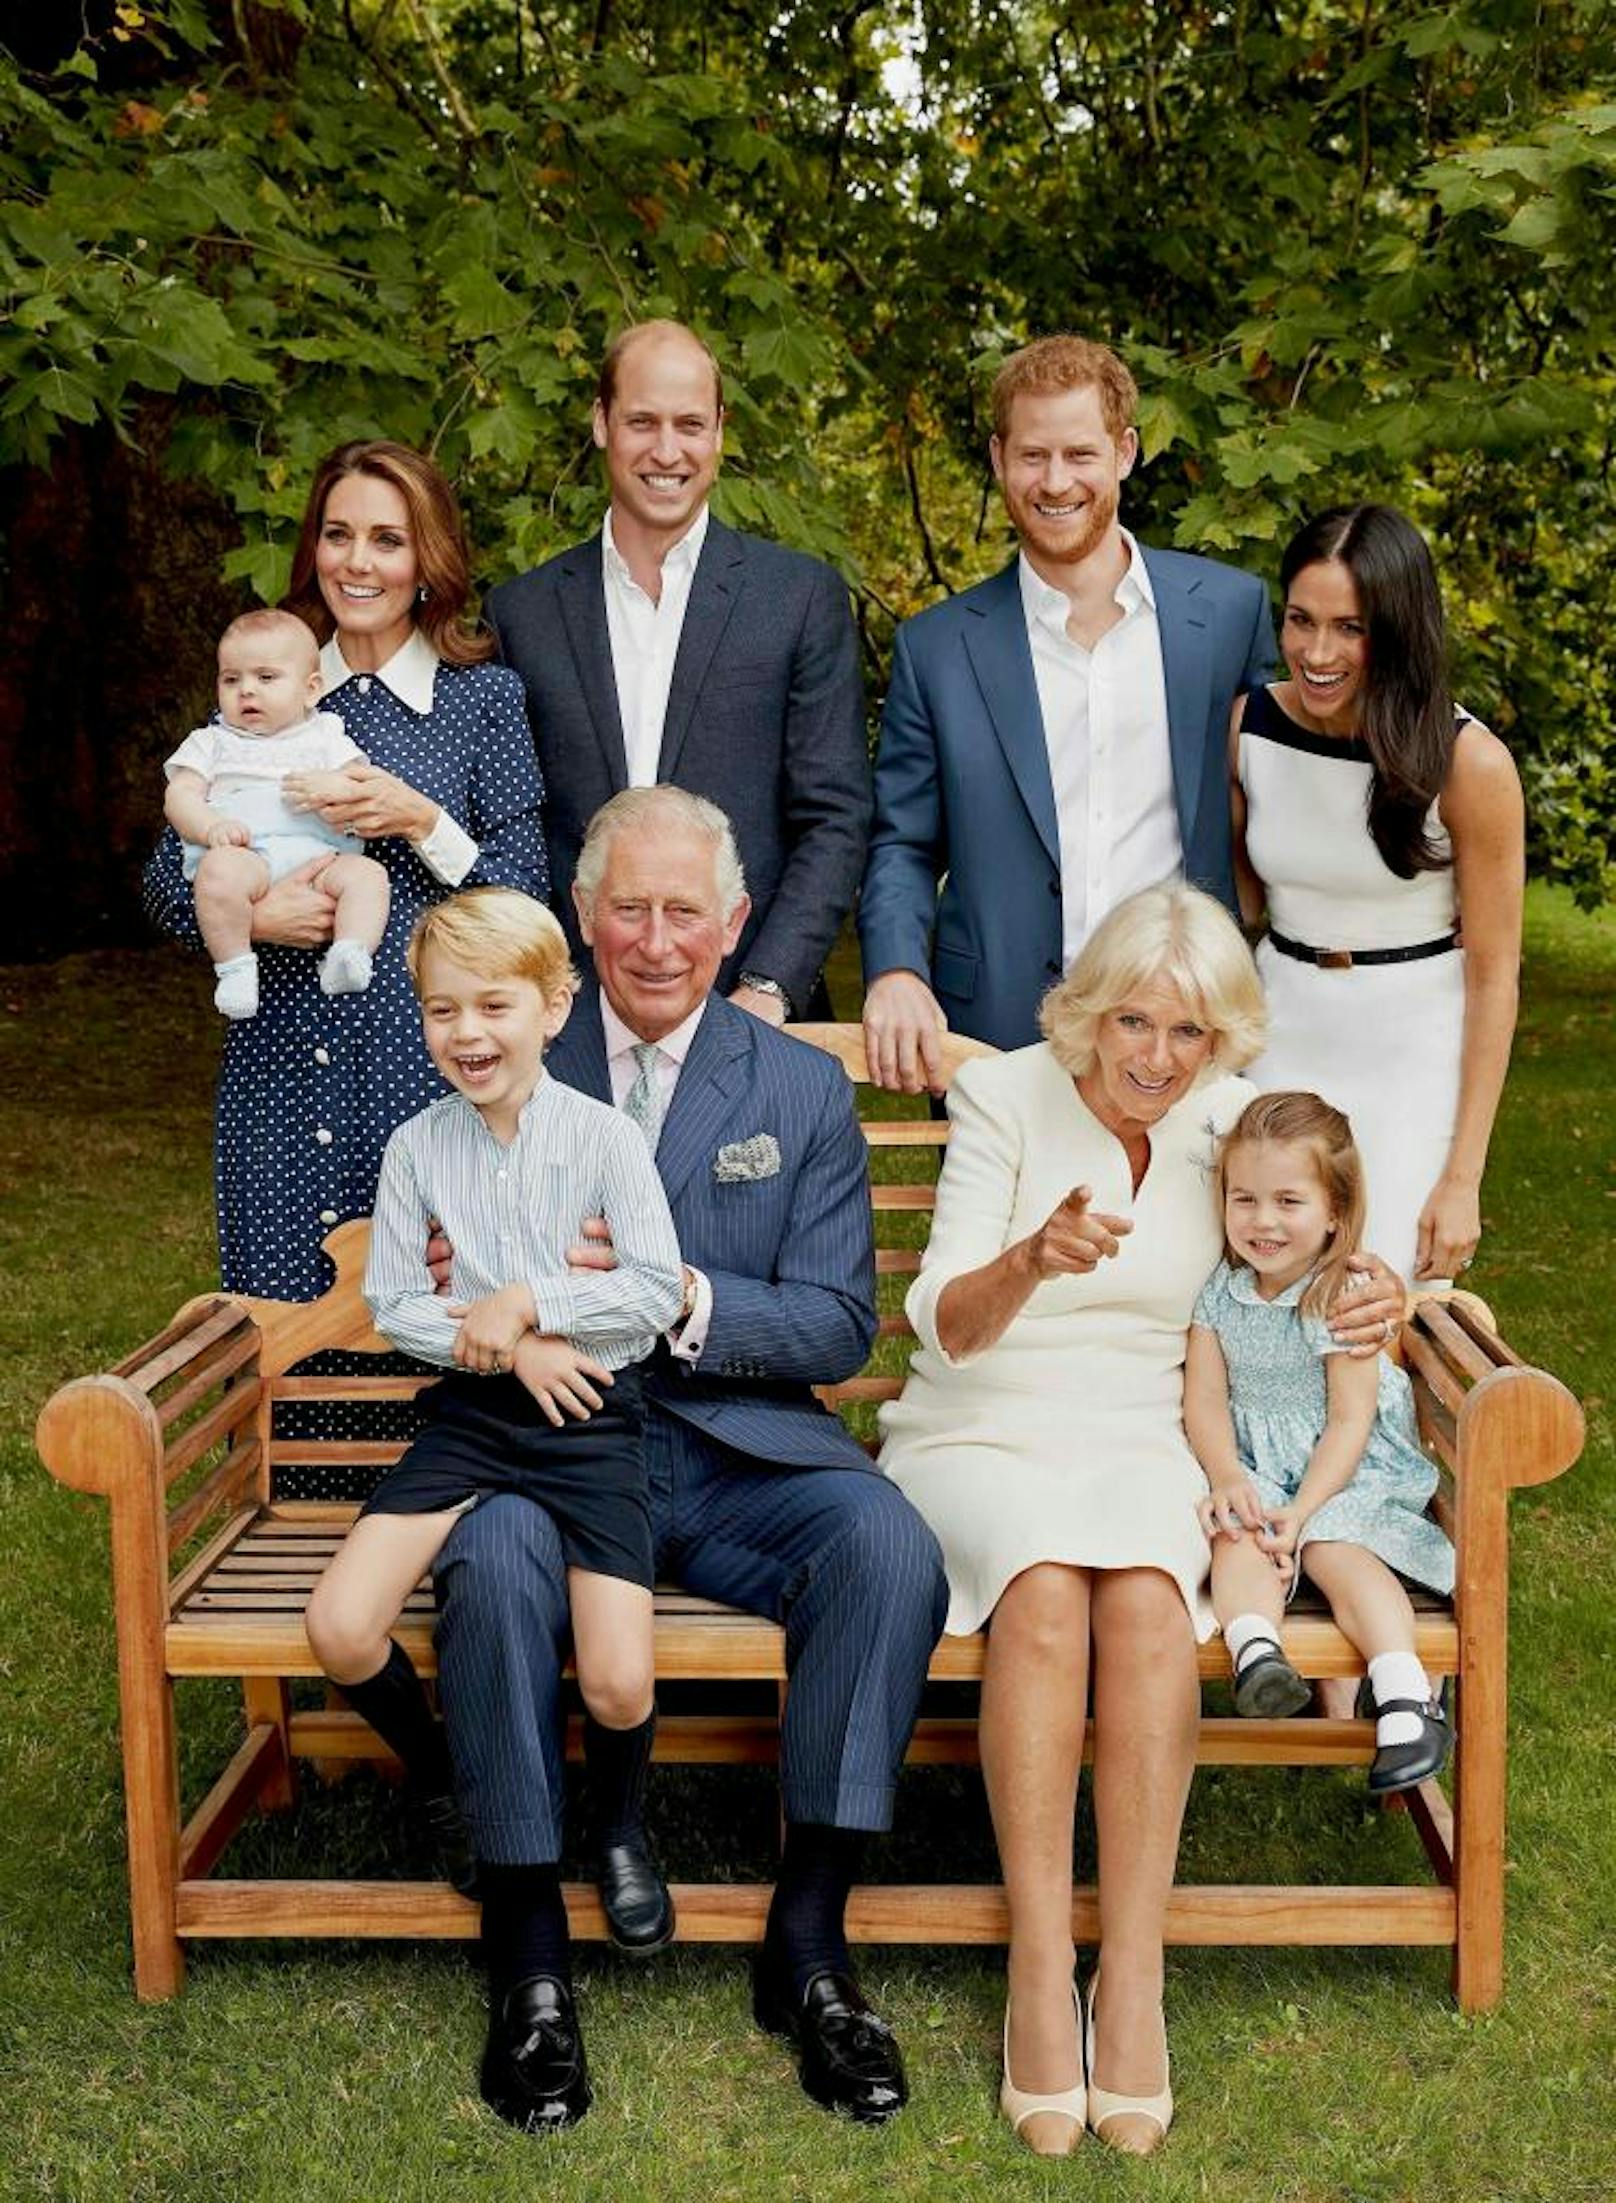 Lustige Runde: Prinz Charles feierte am 14.11.2018 seinen 70. Geburtstag. Das Bild zeigt den britischen Thronfolger mit seiner Ehefrau Camilla, Prinz Harry, Meghan, Prinz William, Kate und seinen Enkelkindern.